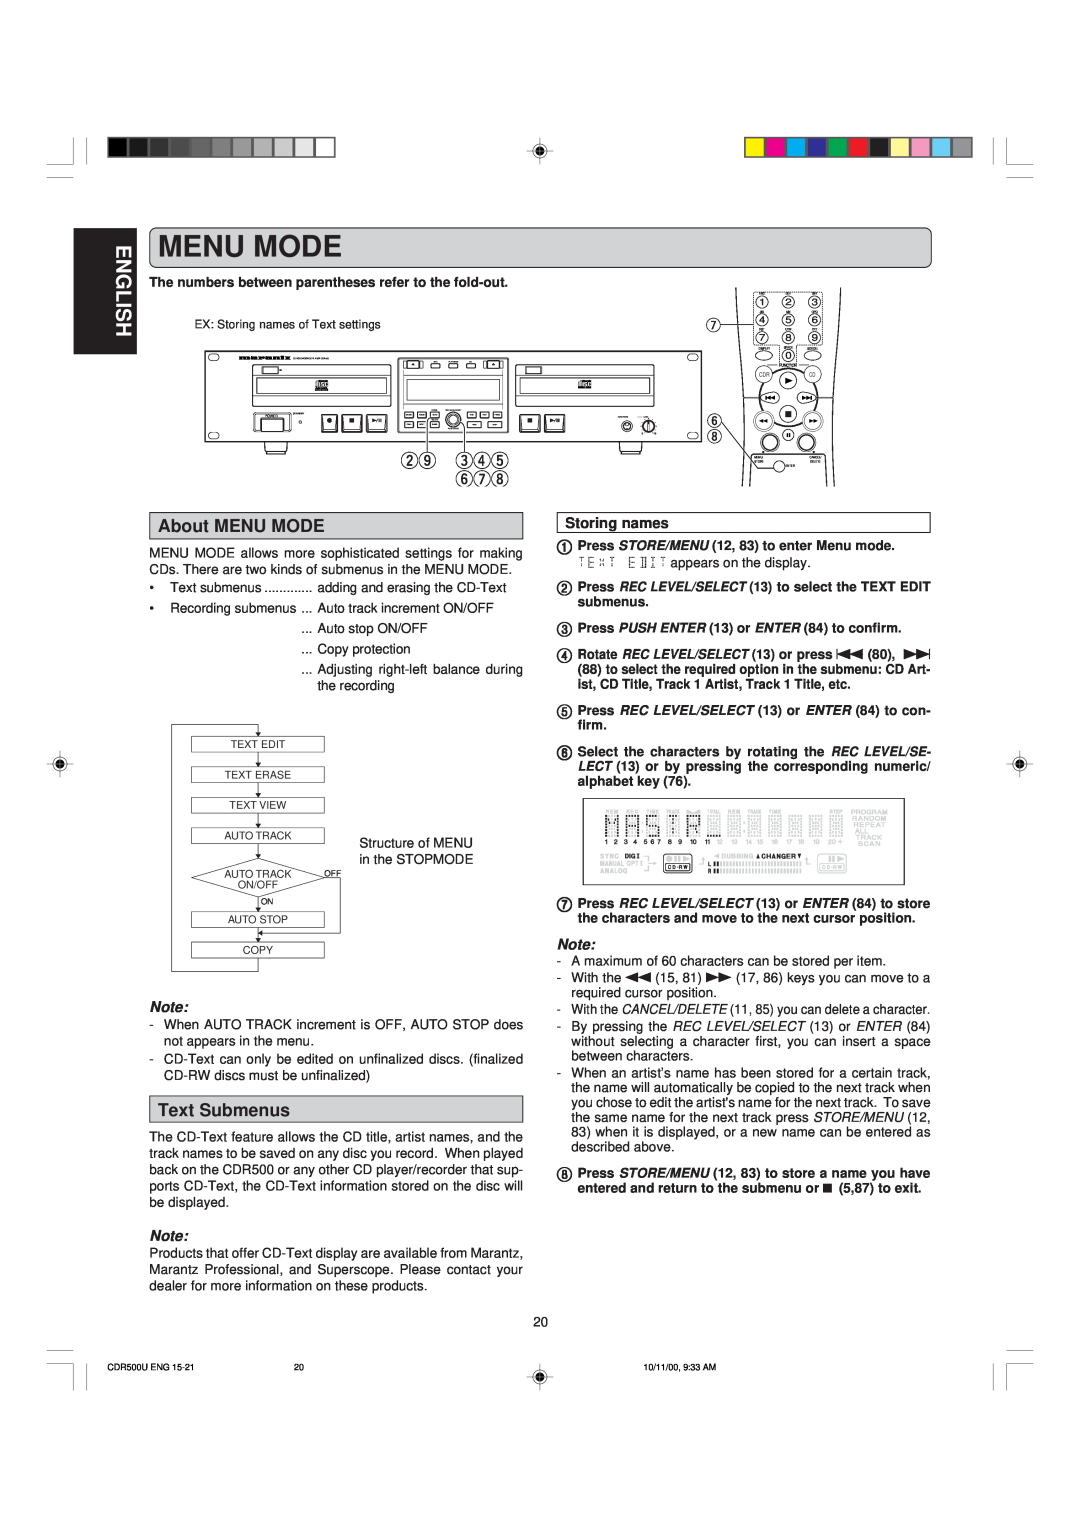 Marantz CDR500 manual Menu Mode, wo ert yui, About MENU MODE, Text Submenus, Storing names 